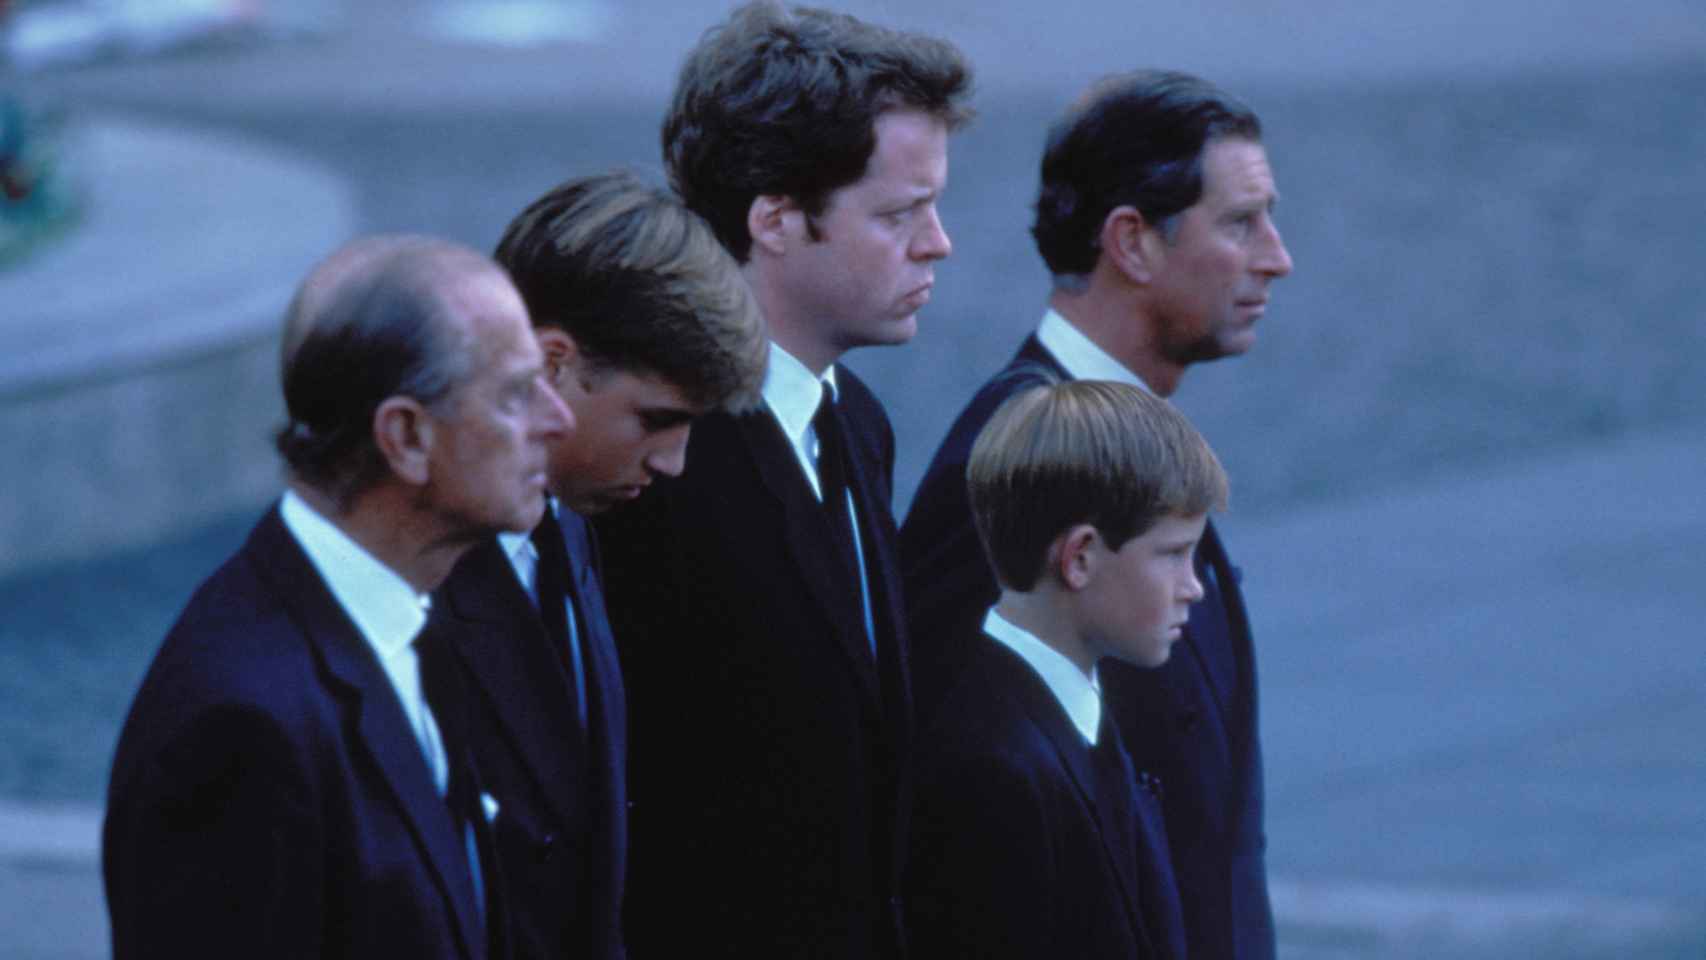 Momento del cortejo fúnebre en el funeral de Diana de Gales.